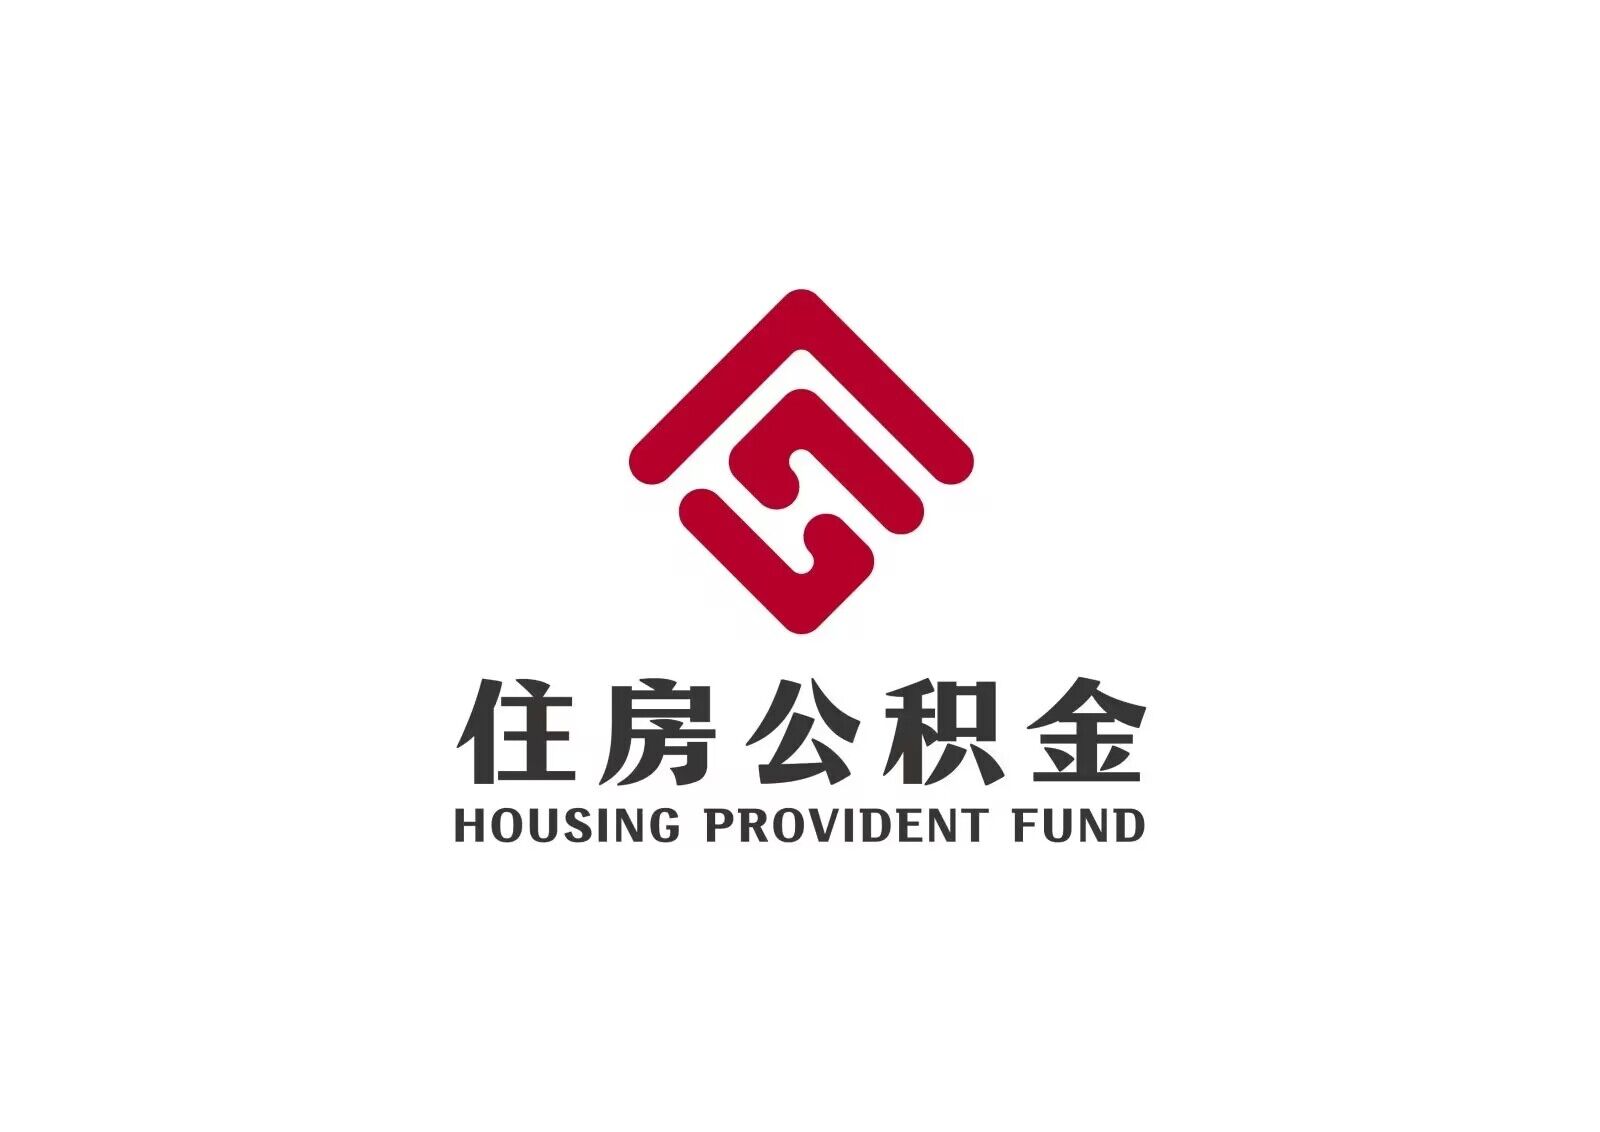 建造、翻建、大修上海市自住住房提取指南